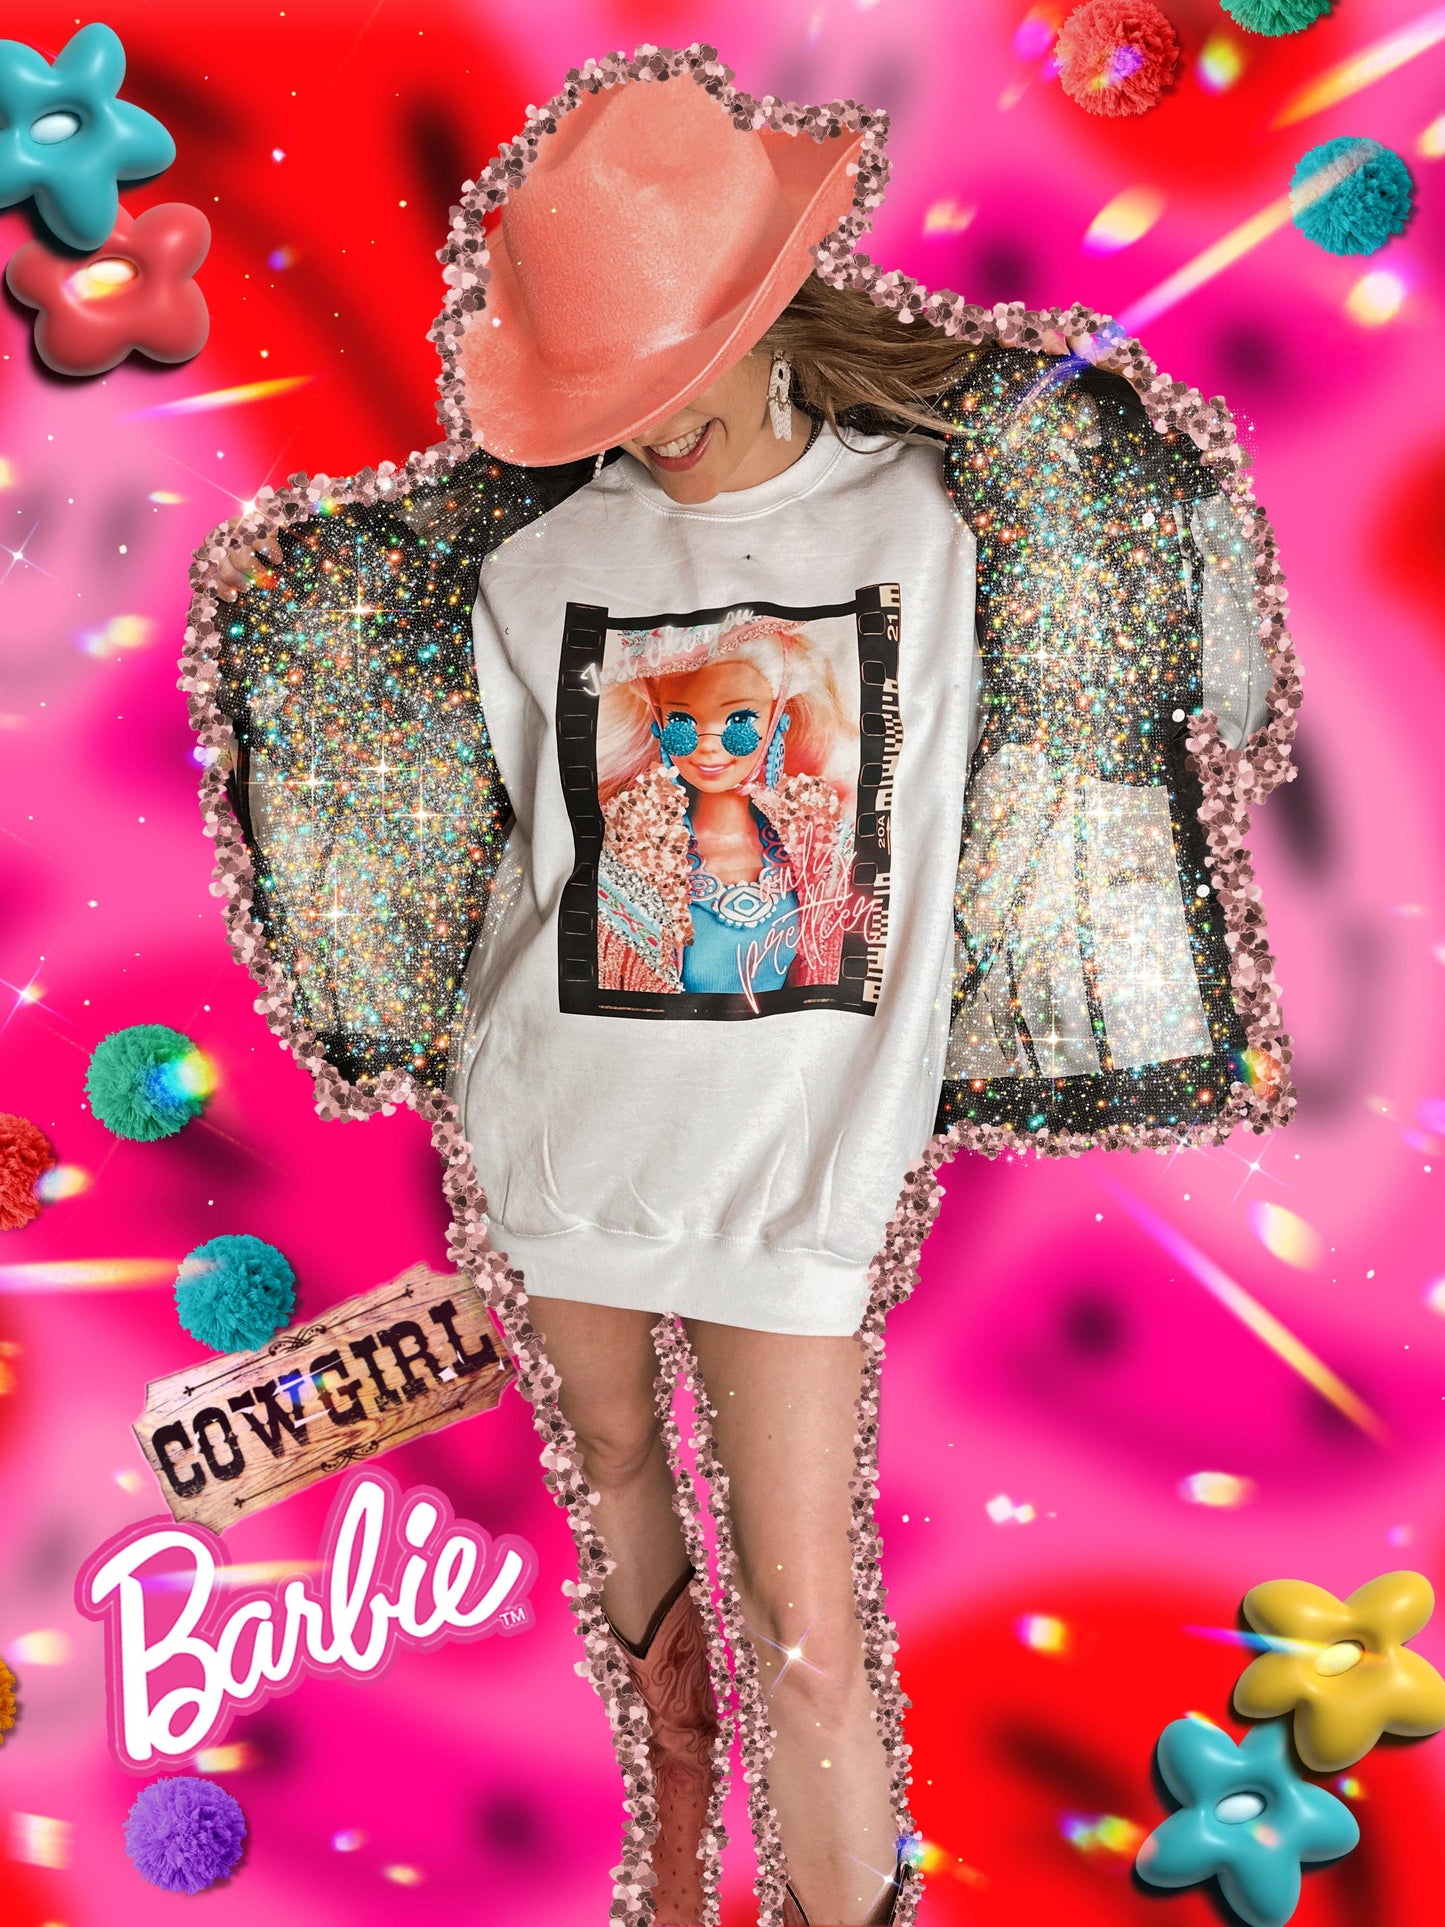 Only Prettier Barbie Sweatshirt